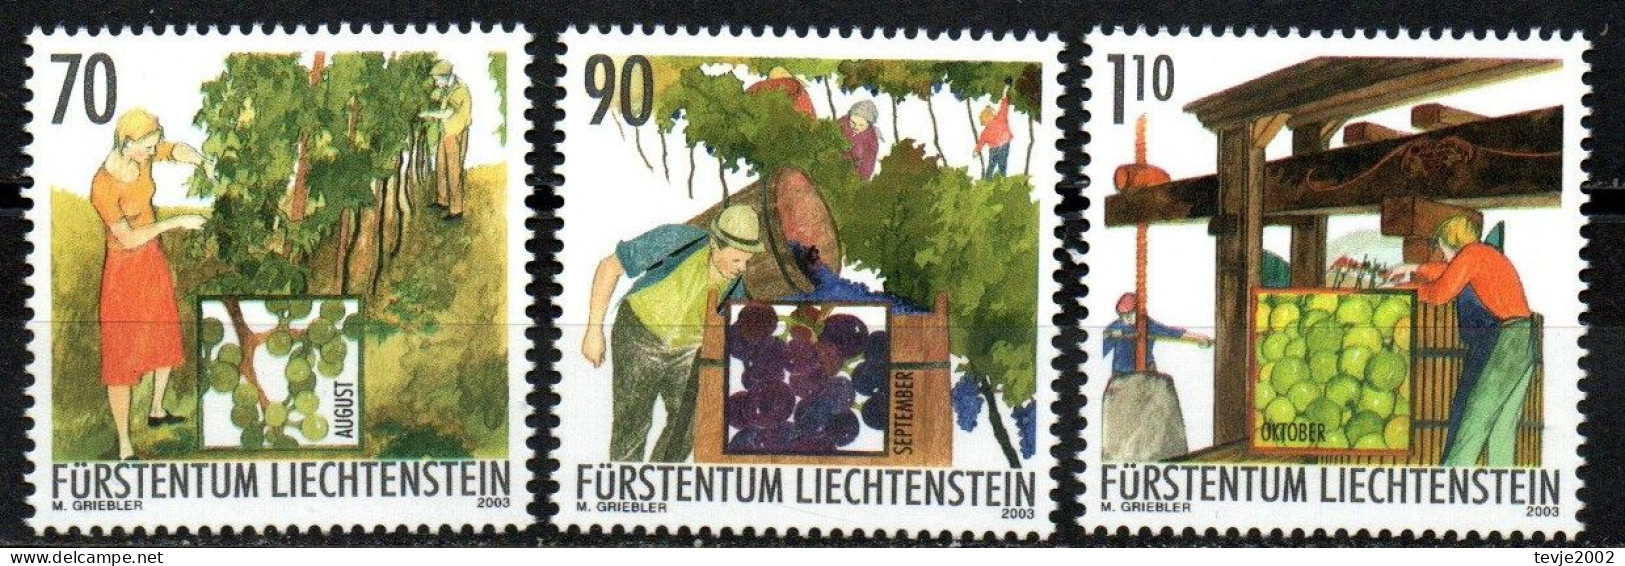 Liechtenstein 2003 - Mi.Nr. 1322 - 1324 - Postfrisch MNH - Weinbau Winzer Wine Growing Winemaker - Agriculture